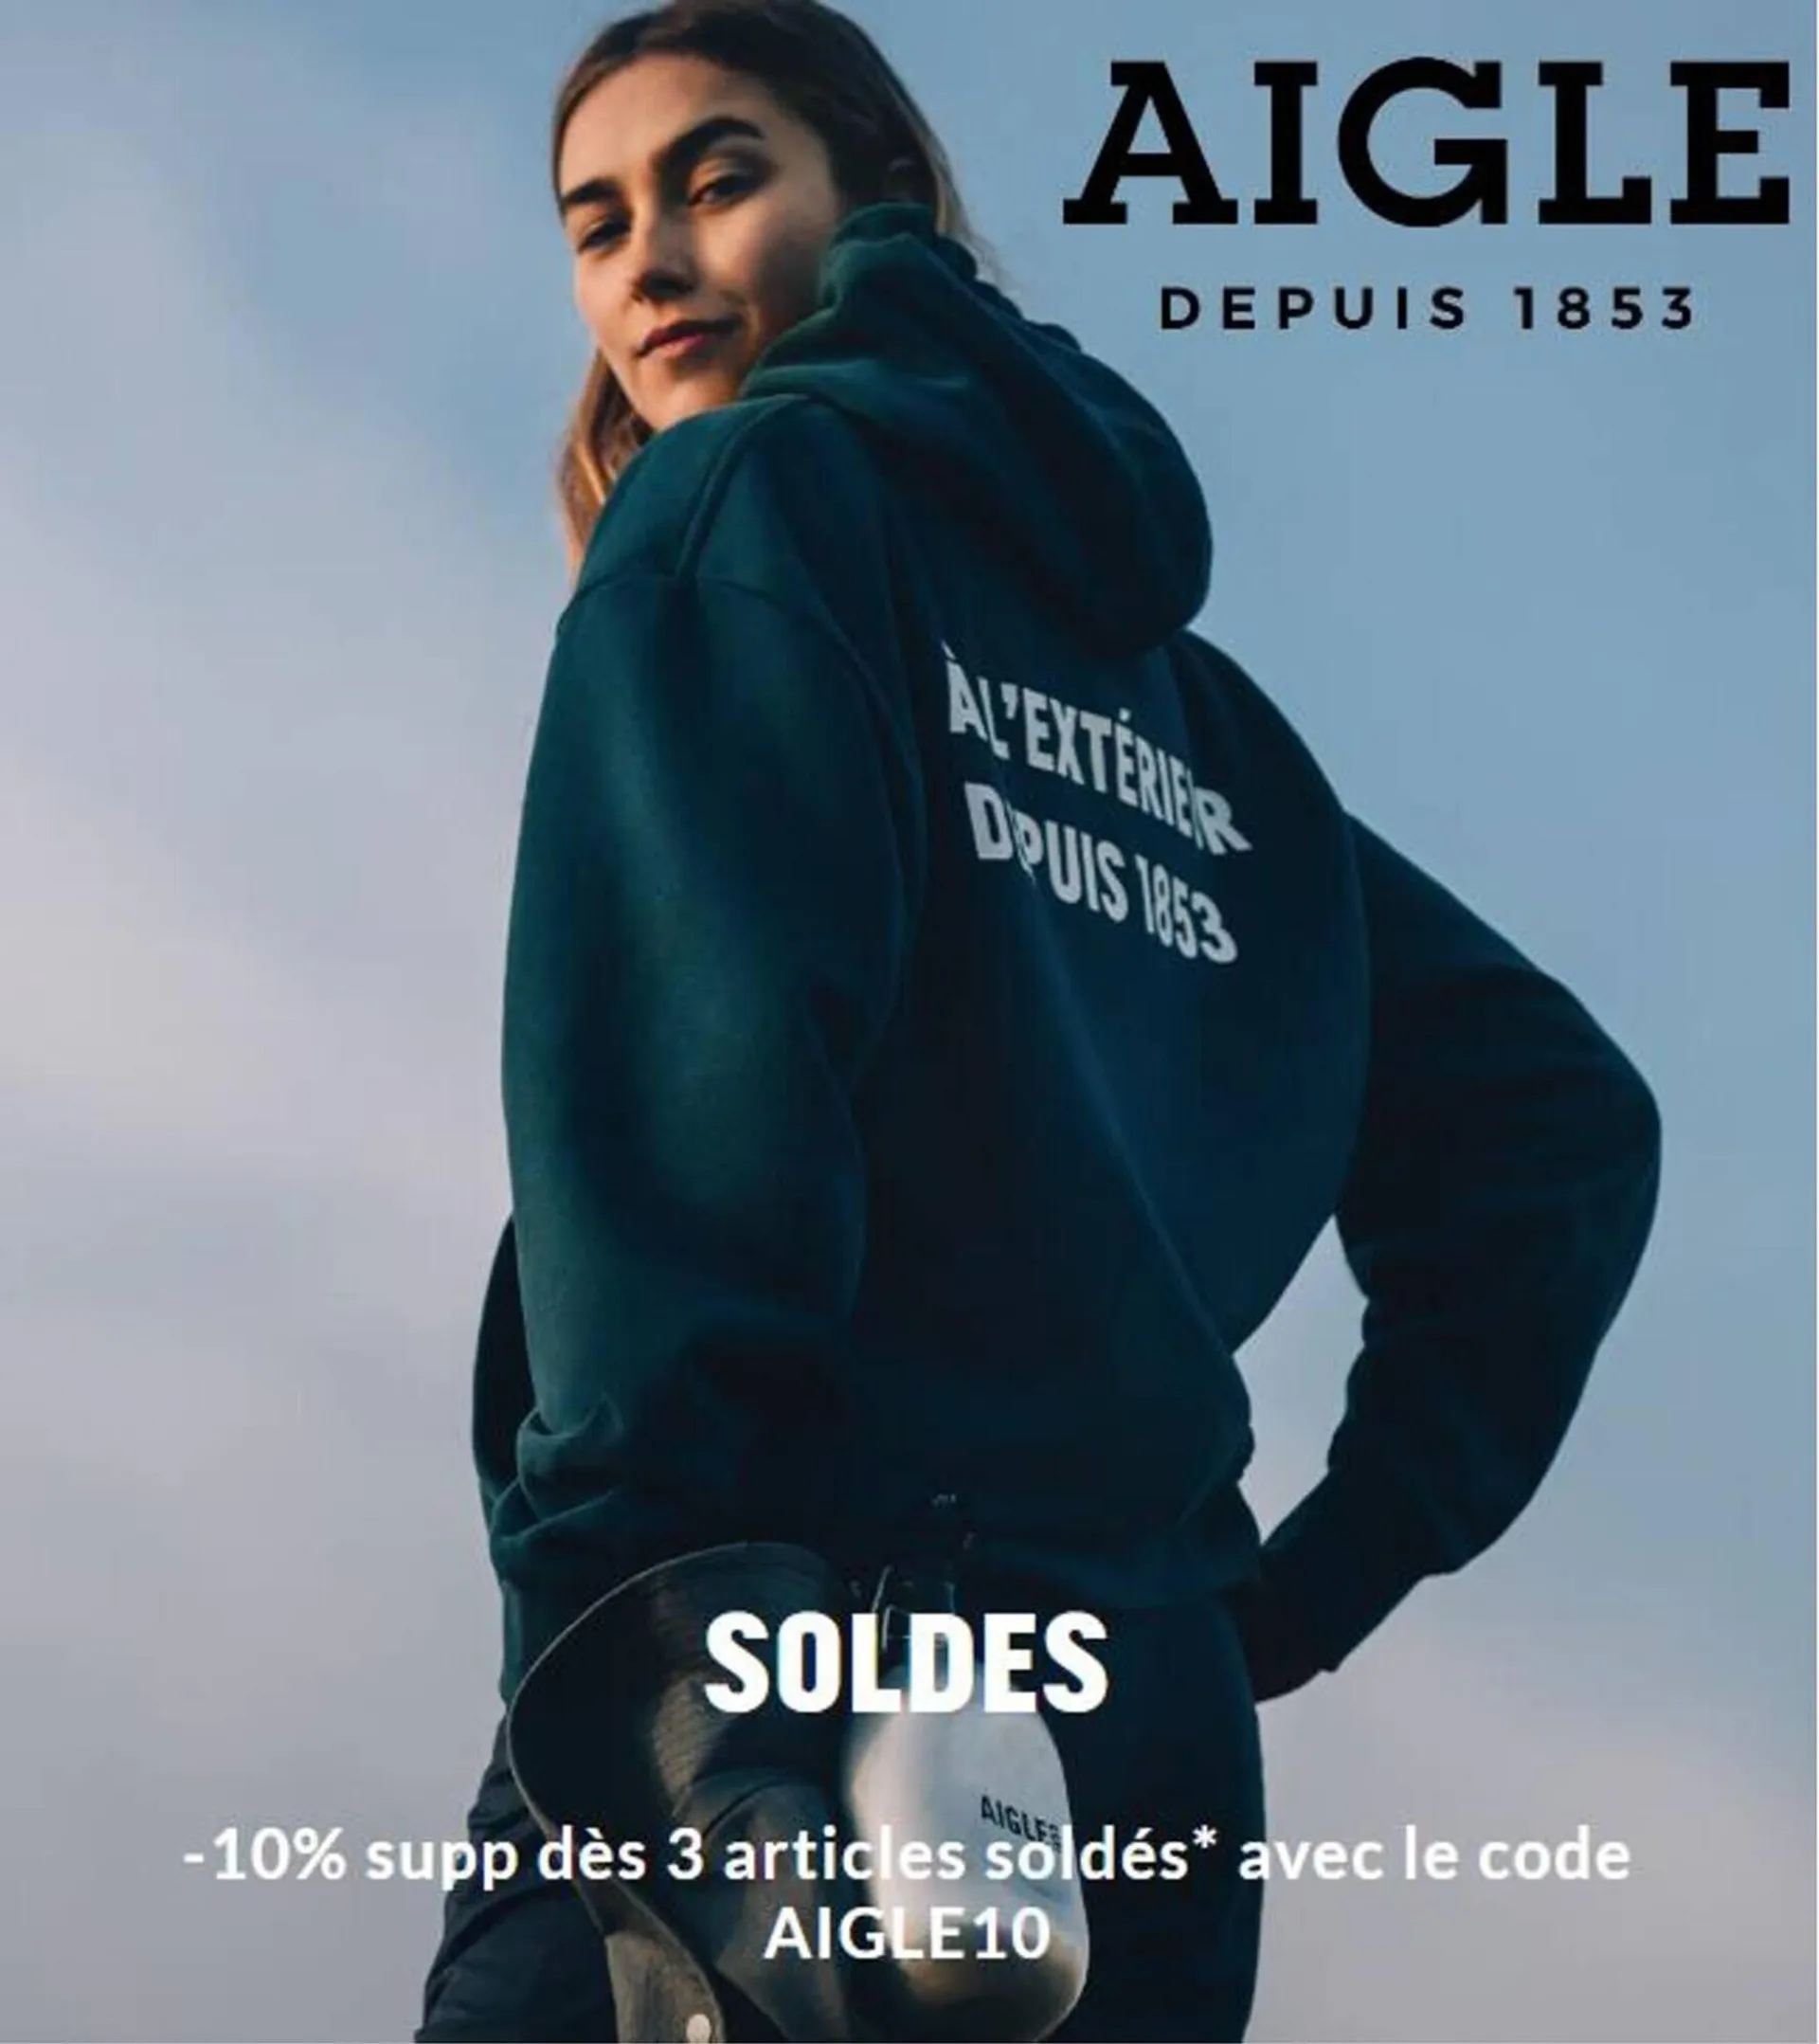 Catalogue Aigle - 1